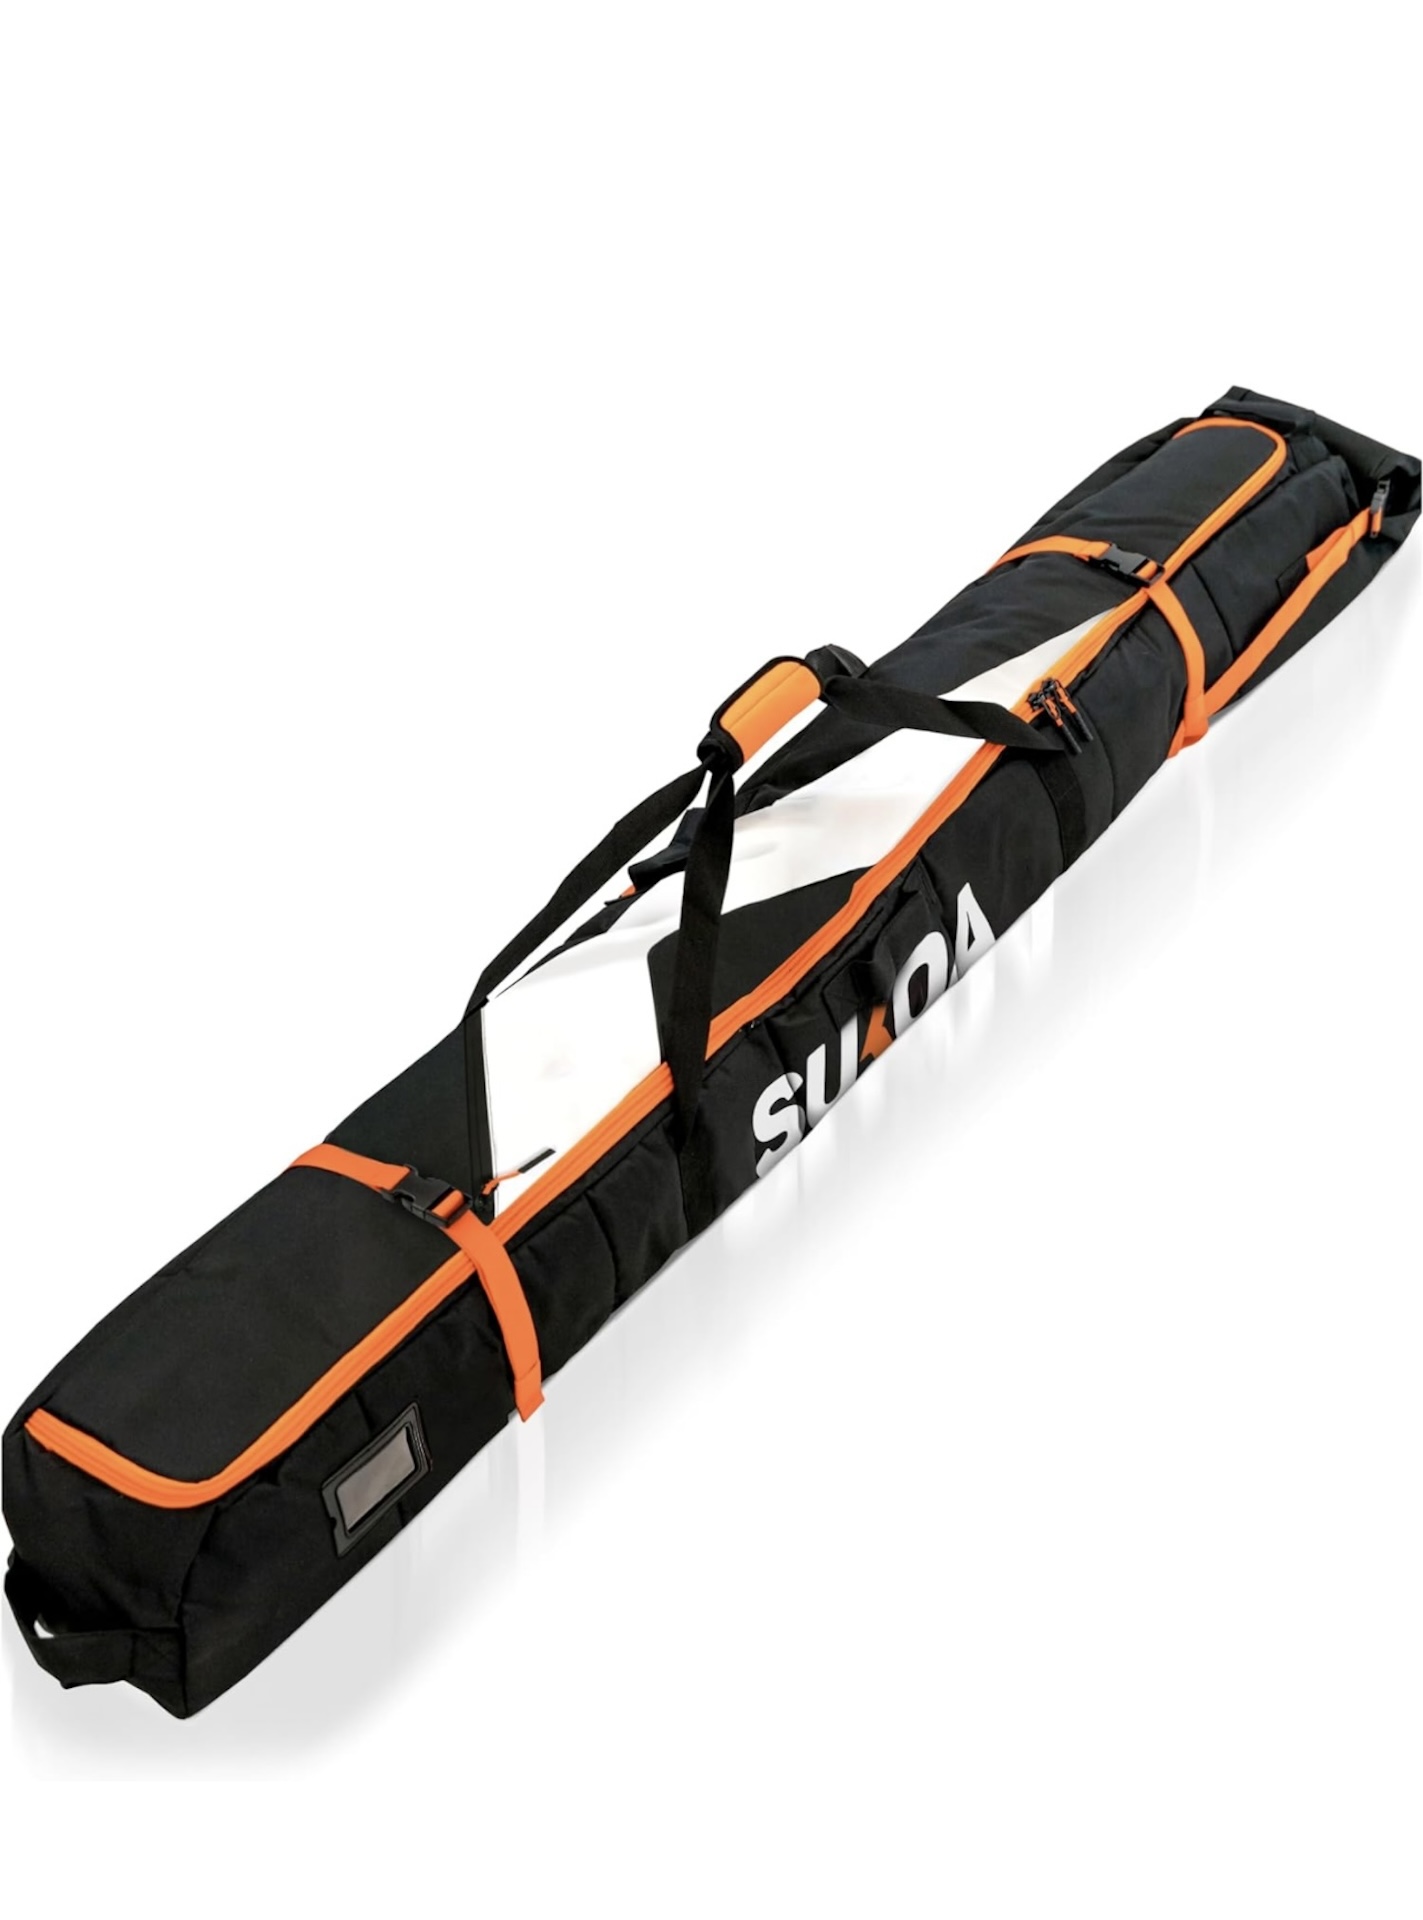 Sukoa Premium Padded Ski Bag product image